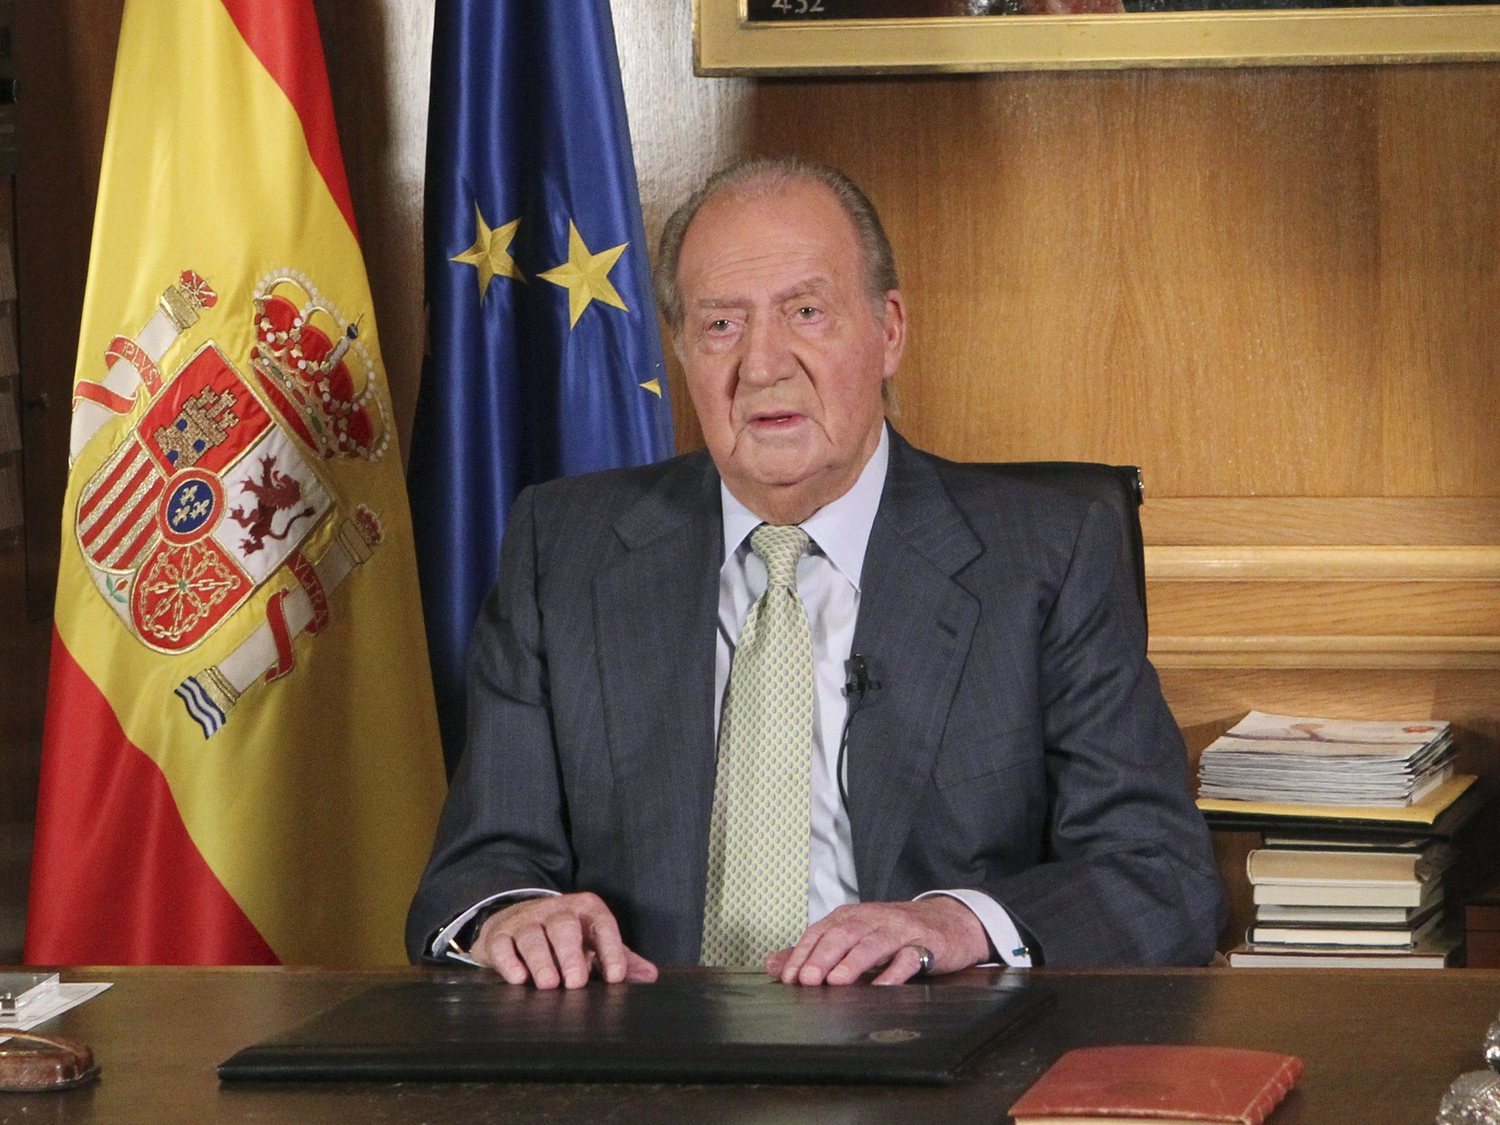 "La justicia es igual para todos": el discurso del rey Juan Carlos en 2011 que ahora se le vuelve el contra